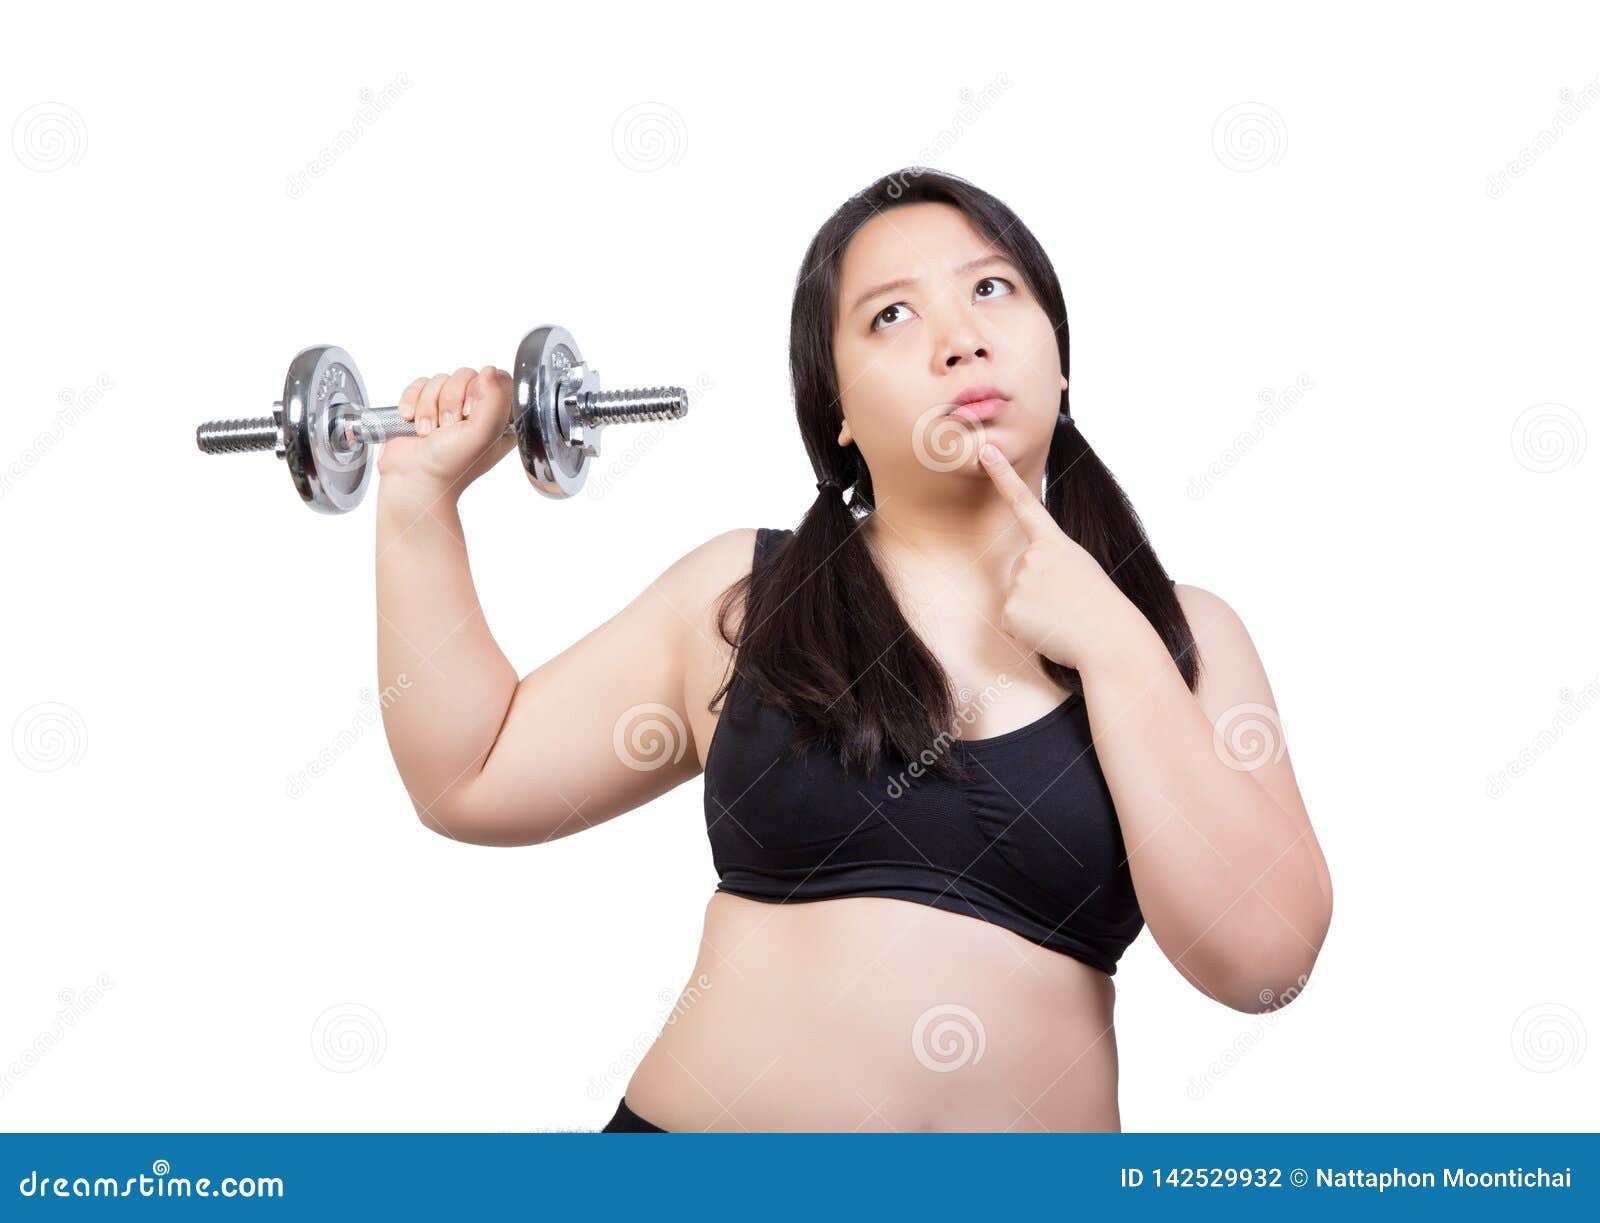 Weight gain plump chubby fatten